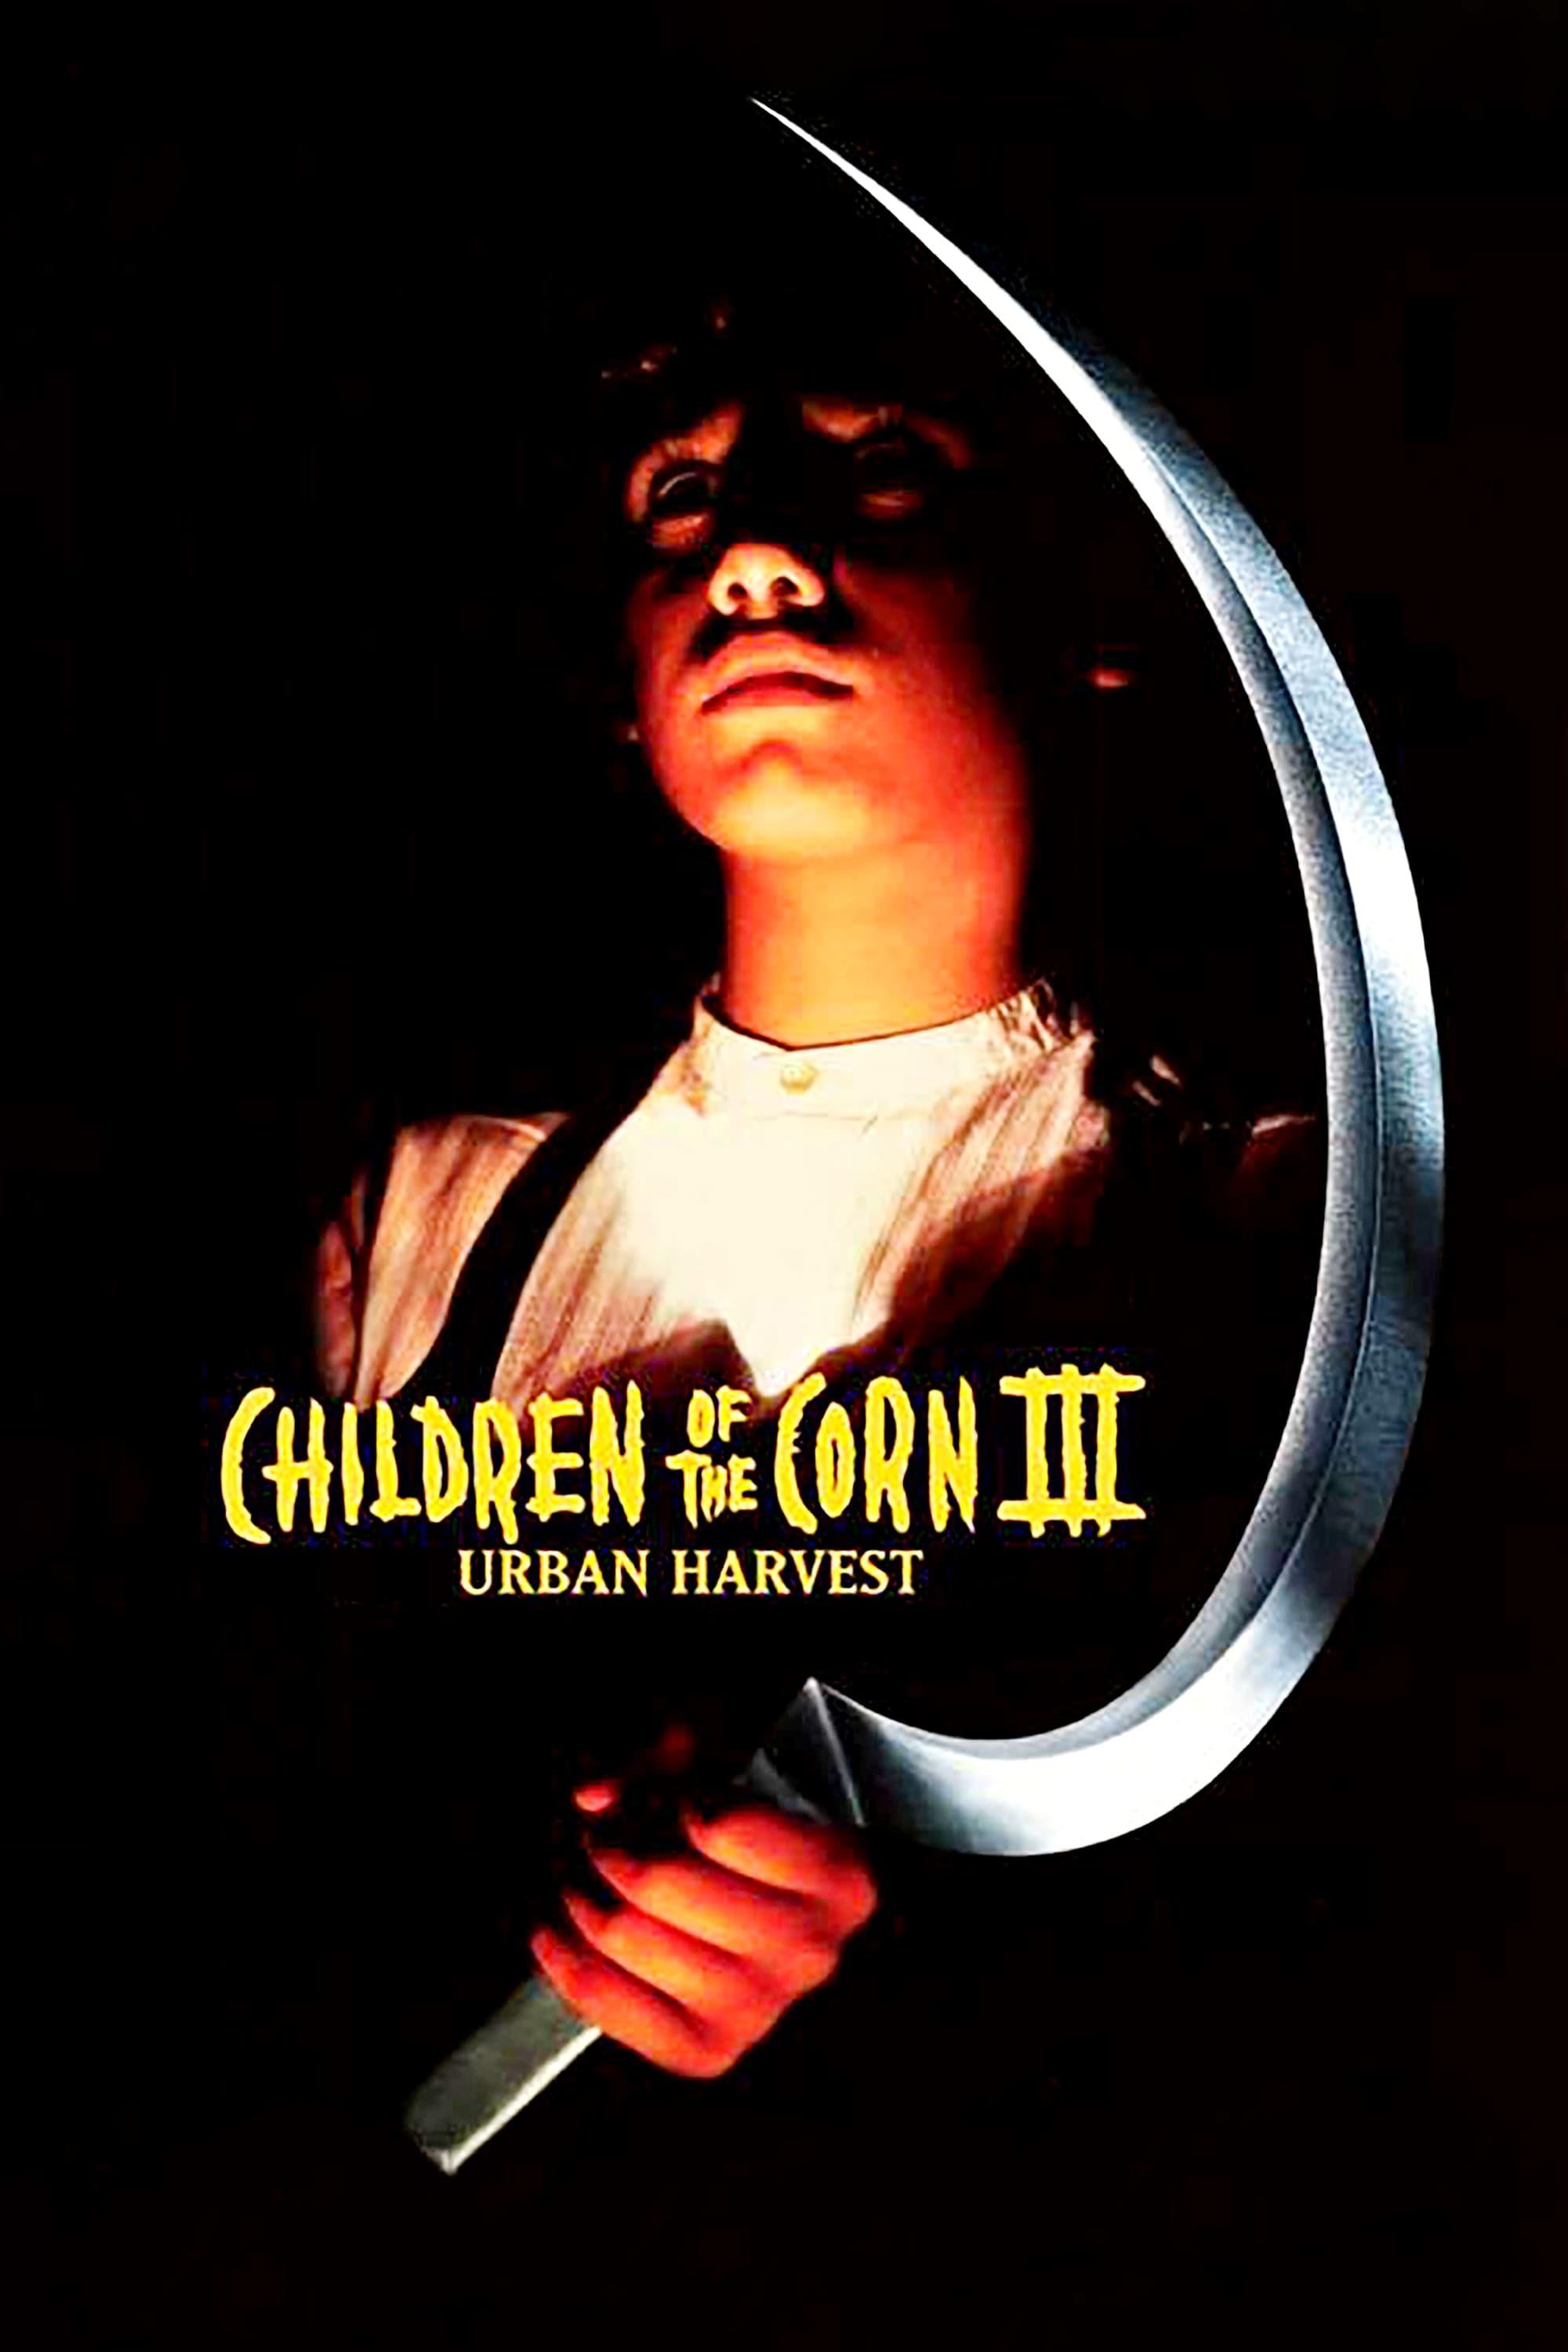 Children of the Corn III: Urban Harvest poster